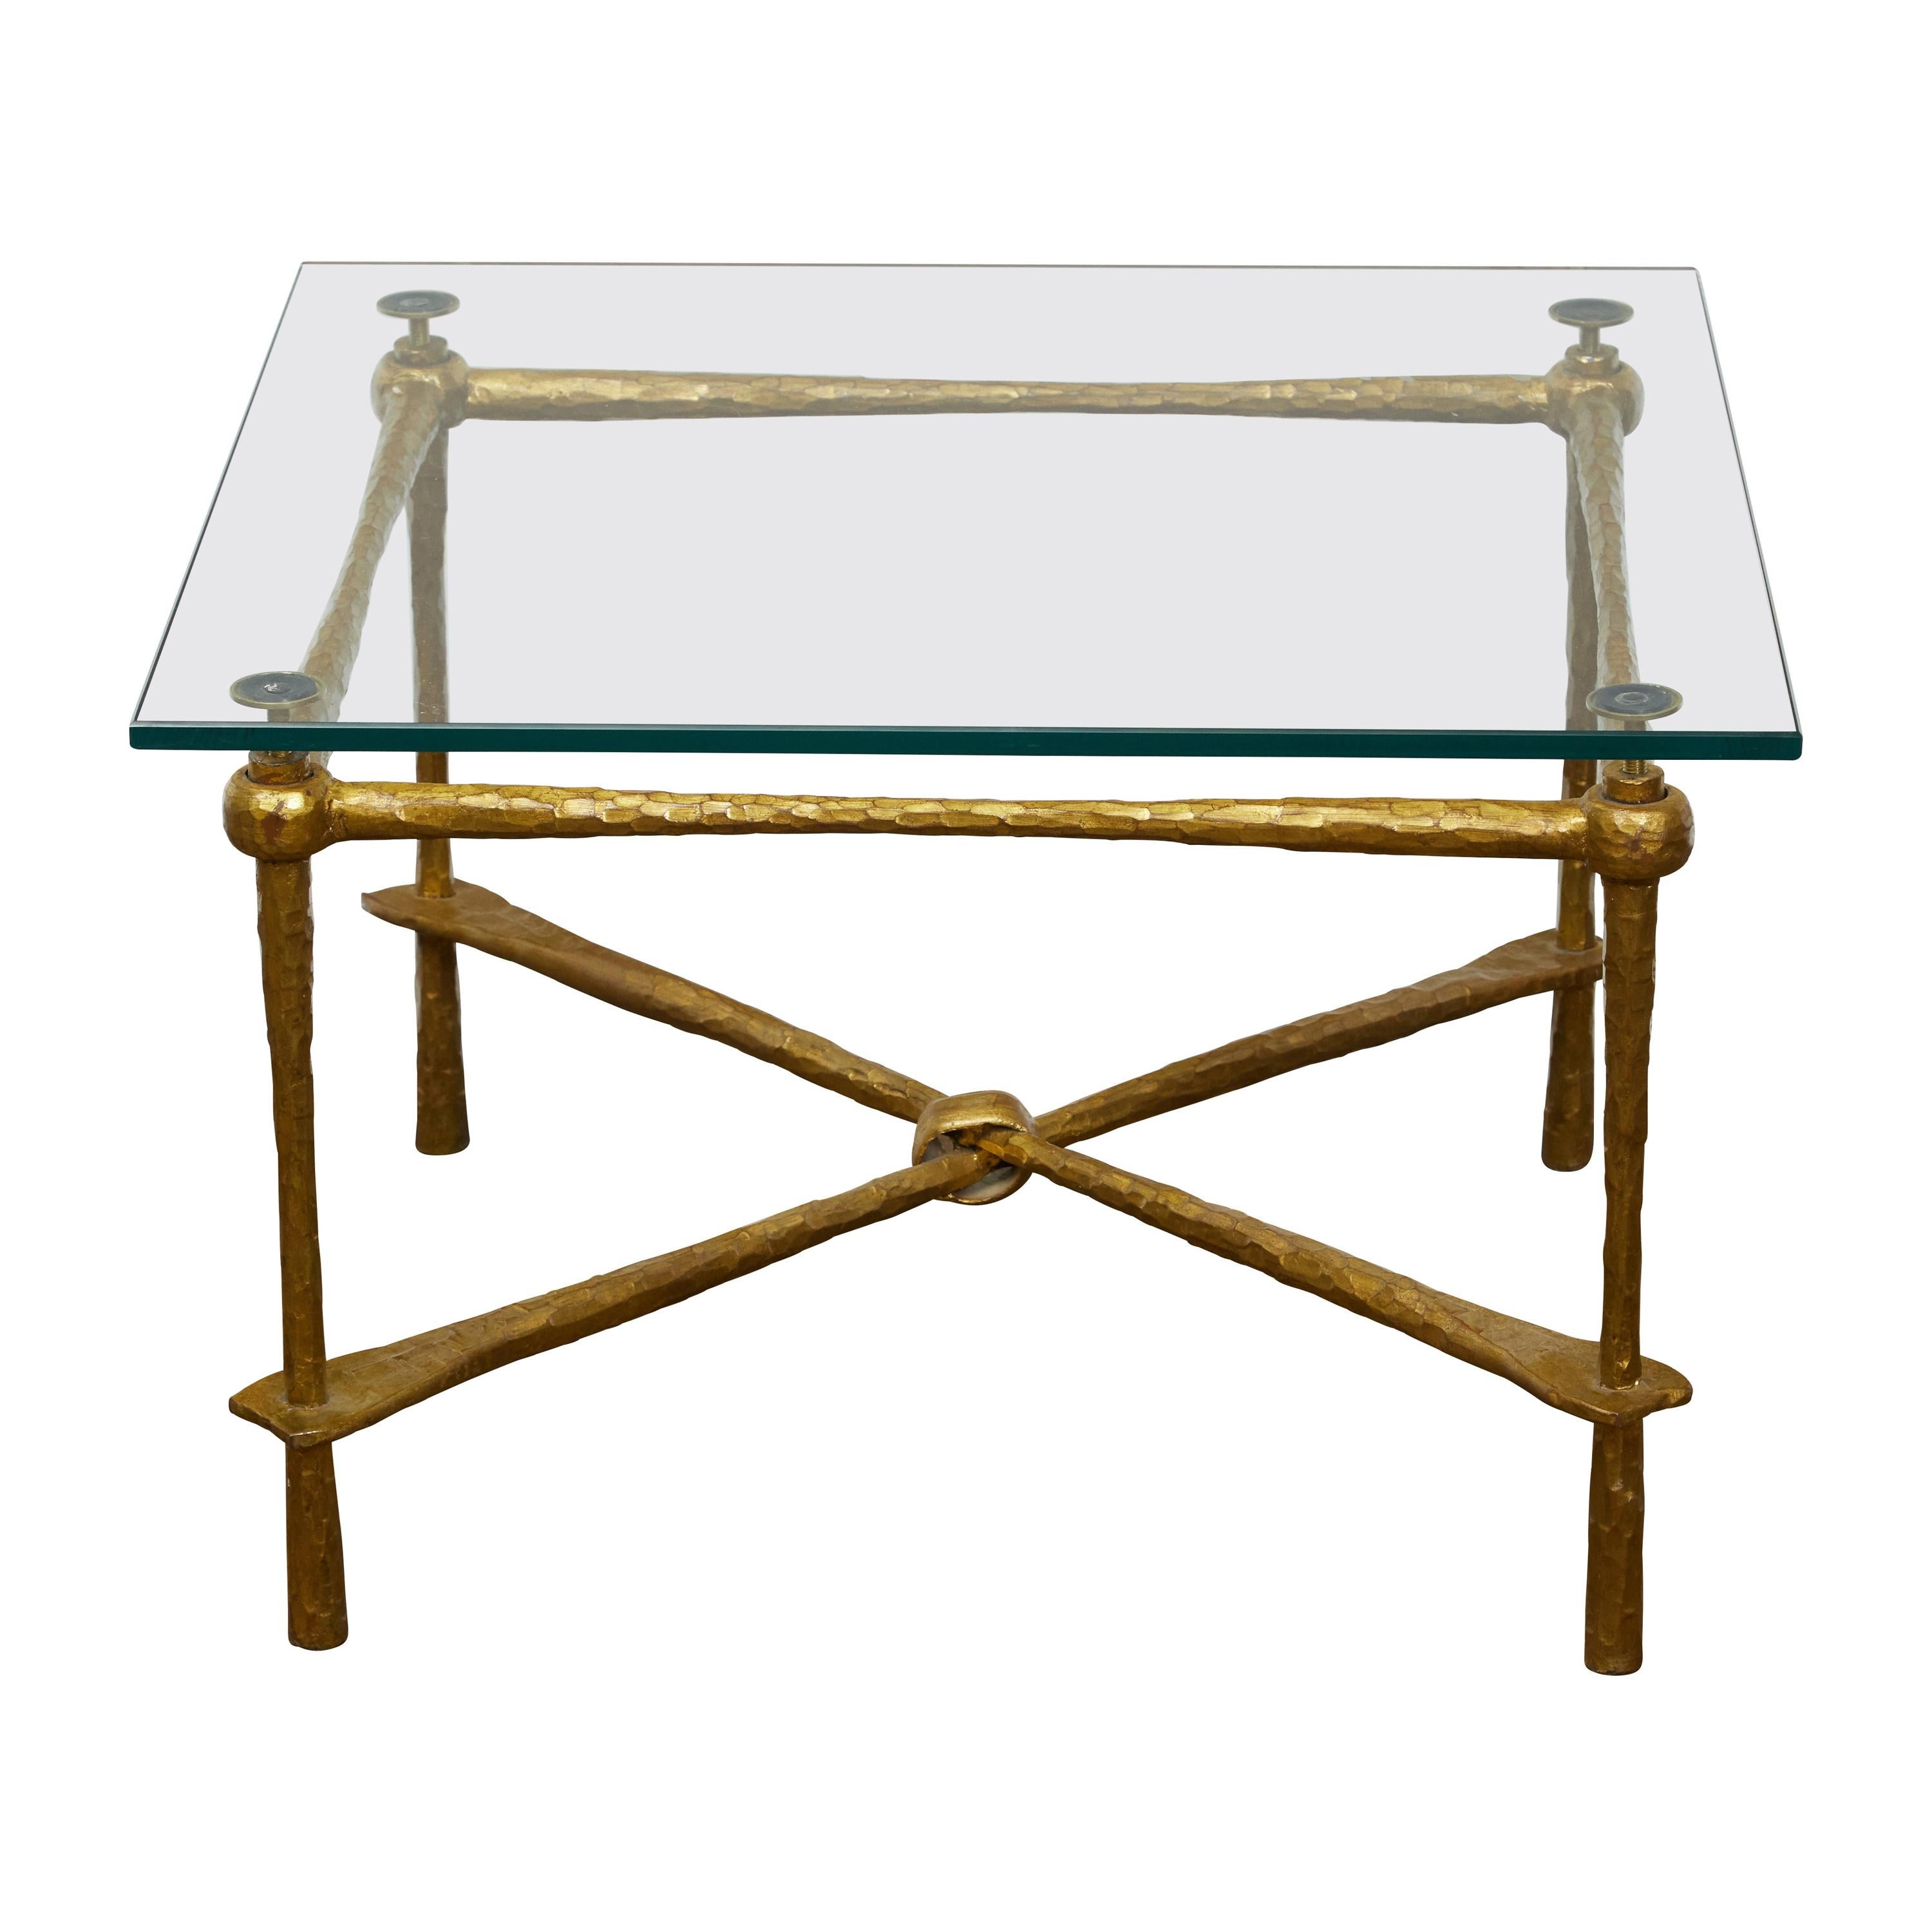 Table basse italienne du milieu du siècle dernier en métal doré avec plateau en verre et accents martelés